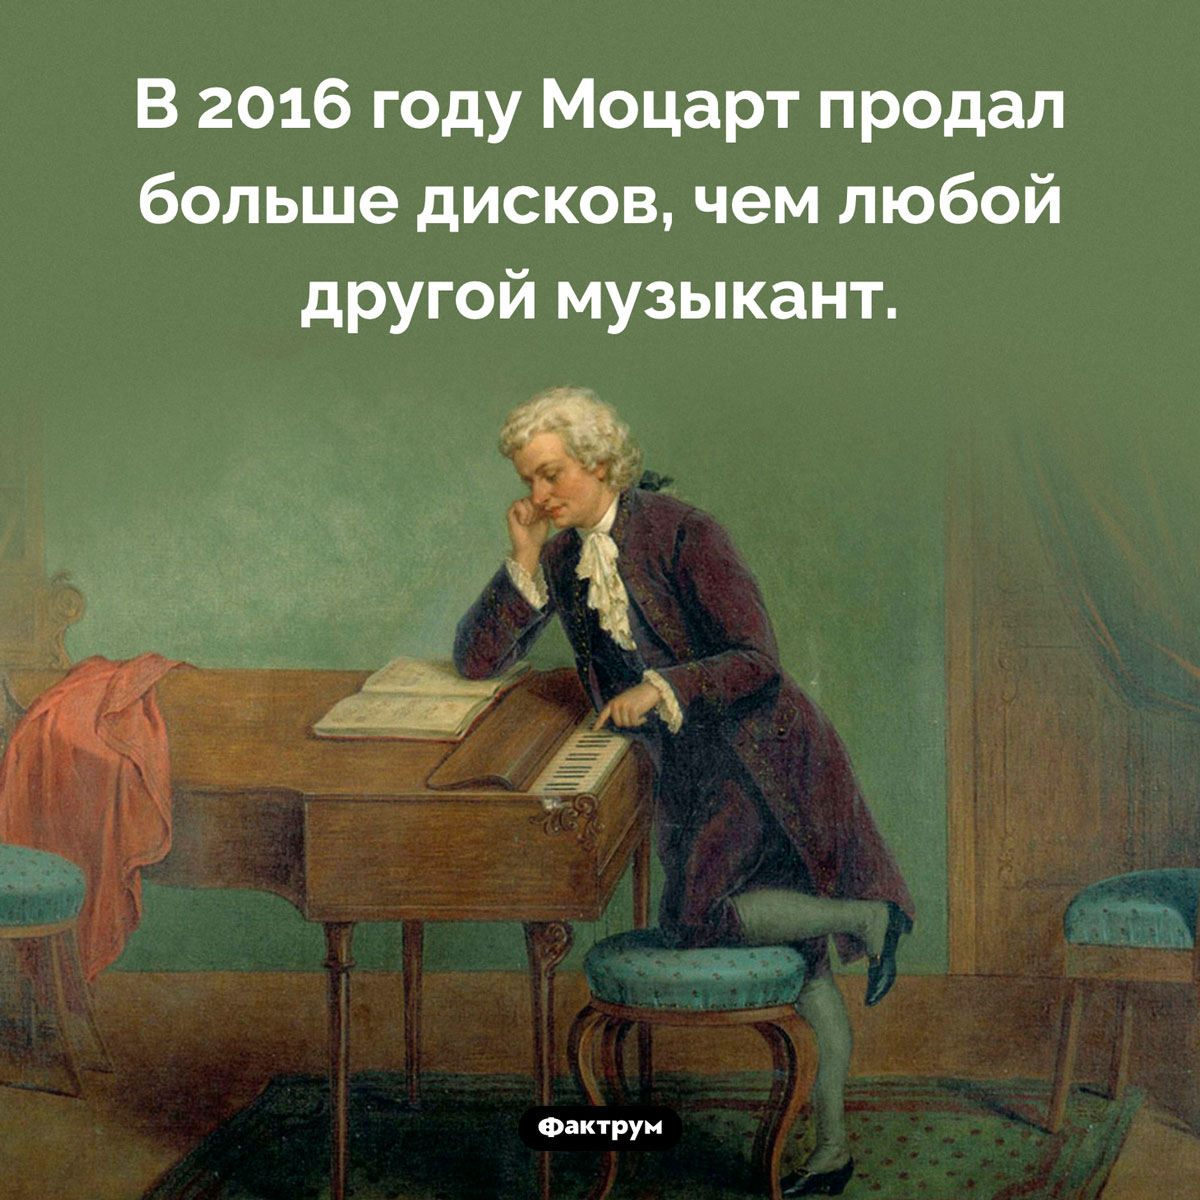 Продажи Моцарта